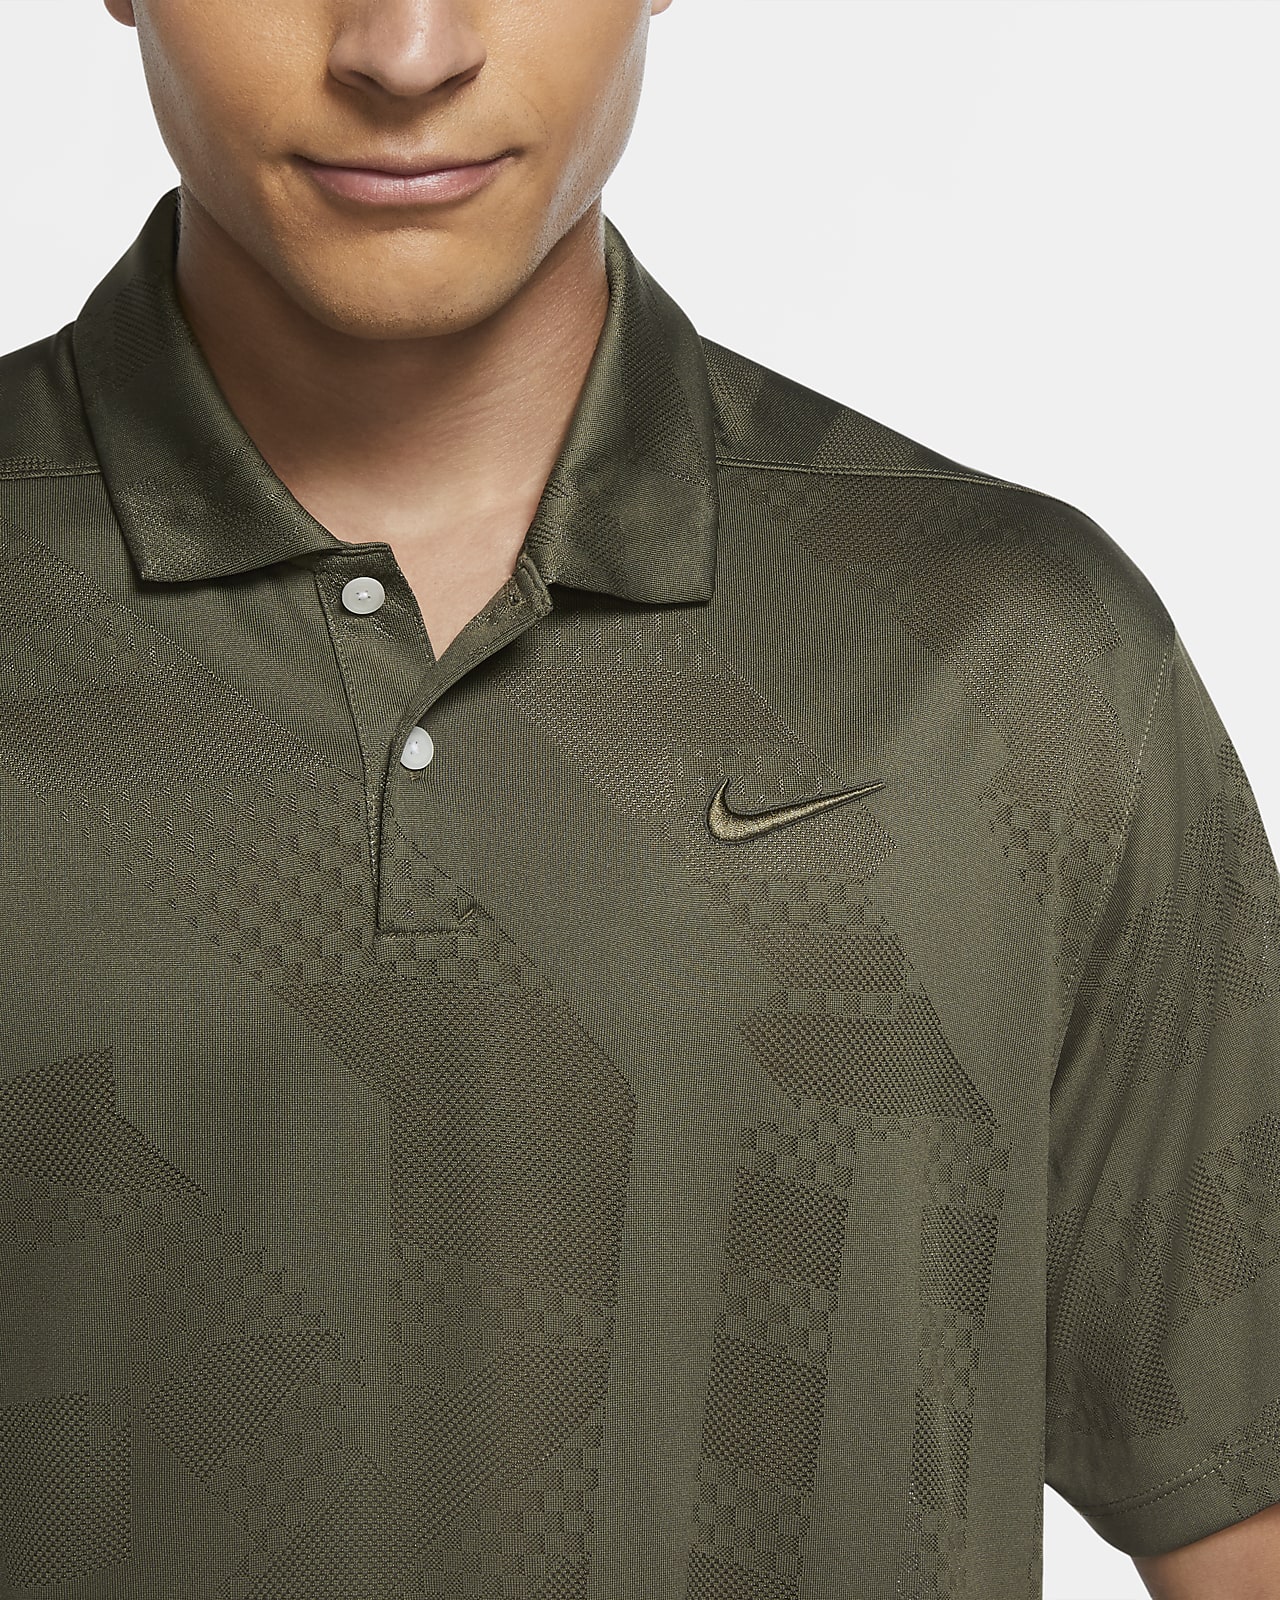 Nike Dri-FIT Vapor Men's Golf Polo. Nike HU